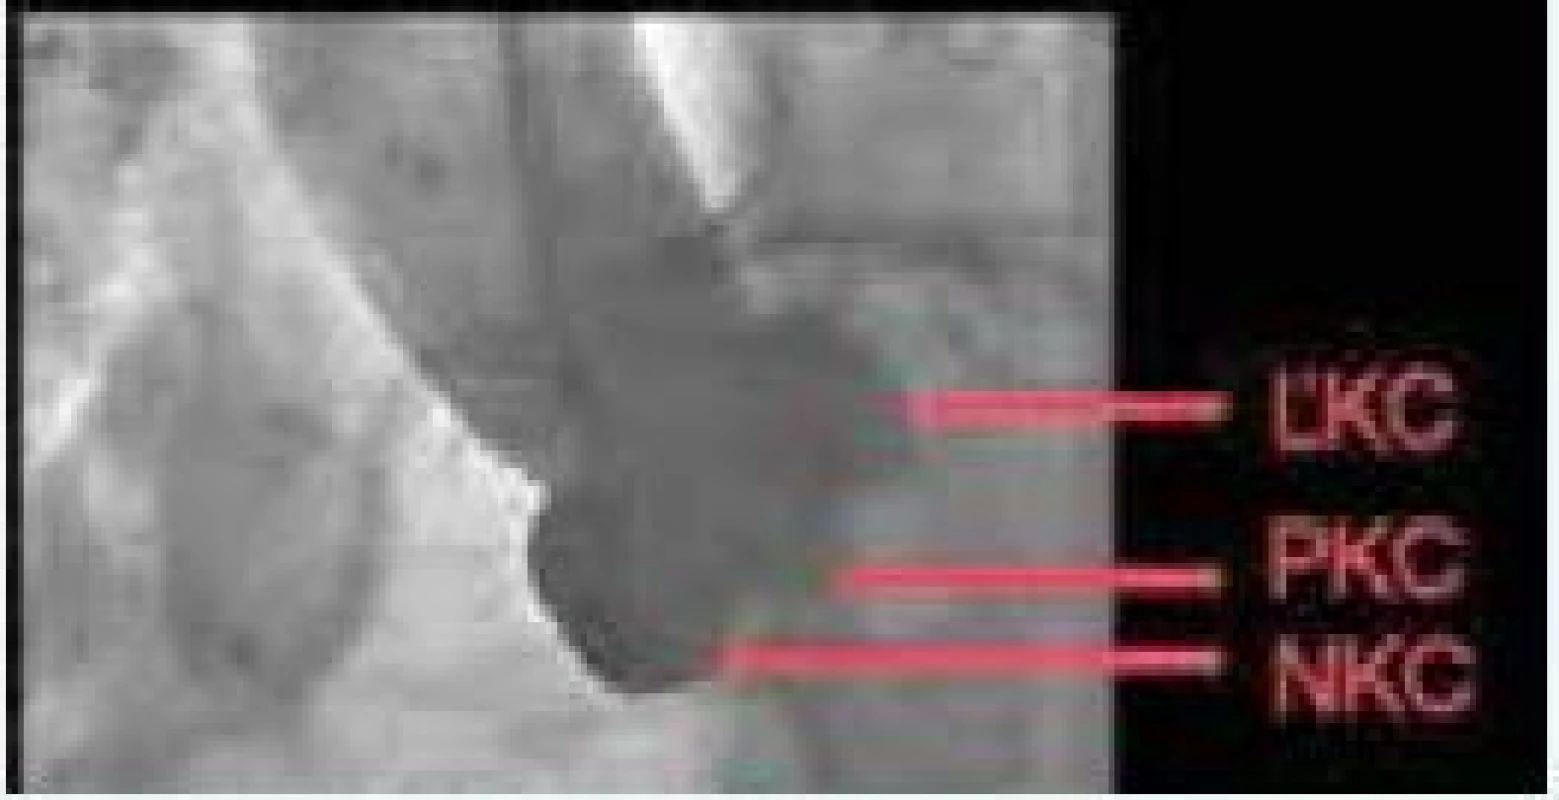 Ideálna implantačná skiaskopická kolmá projekcia na bazálny prstenec aortálnej chlopne. Zdroj: VÚSCH a.s.